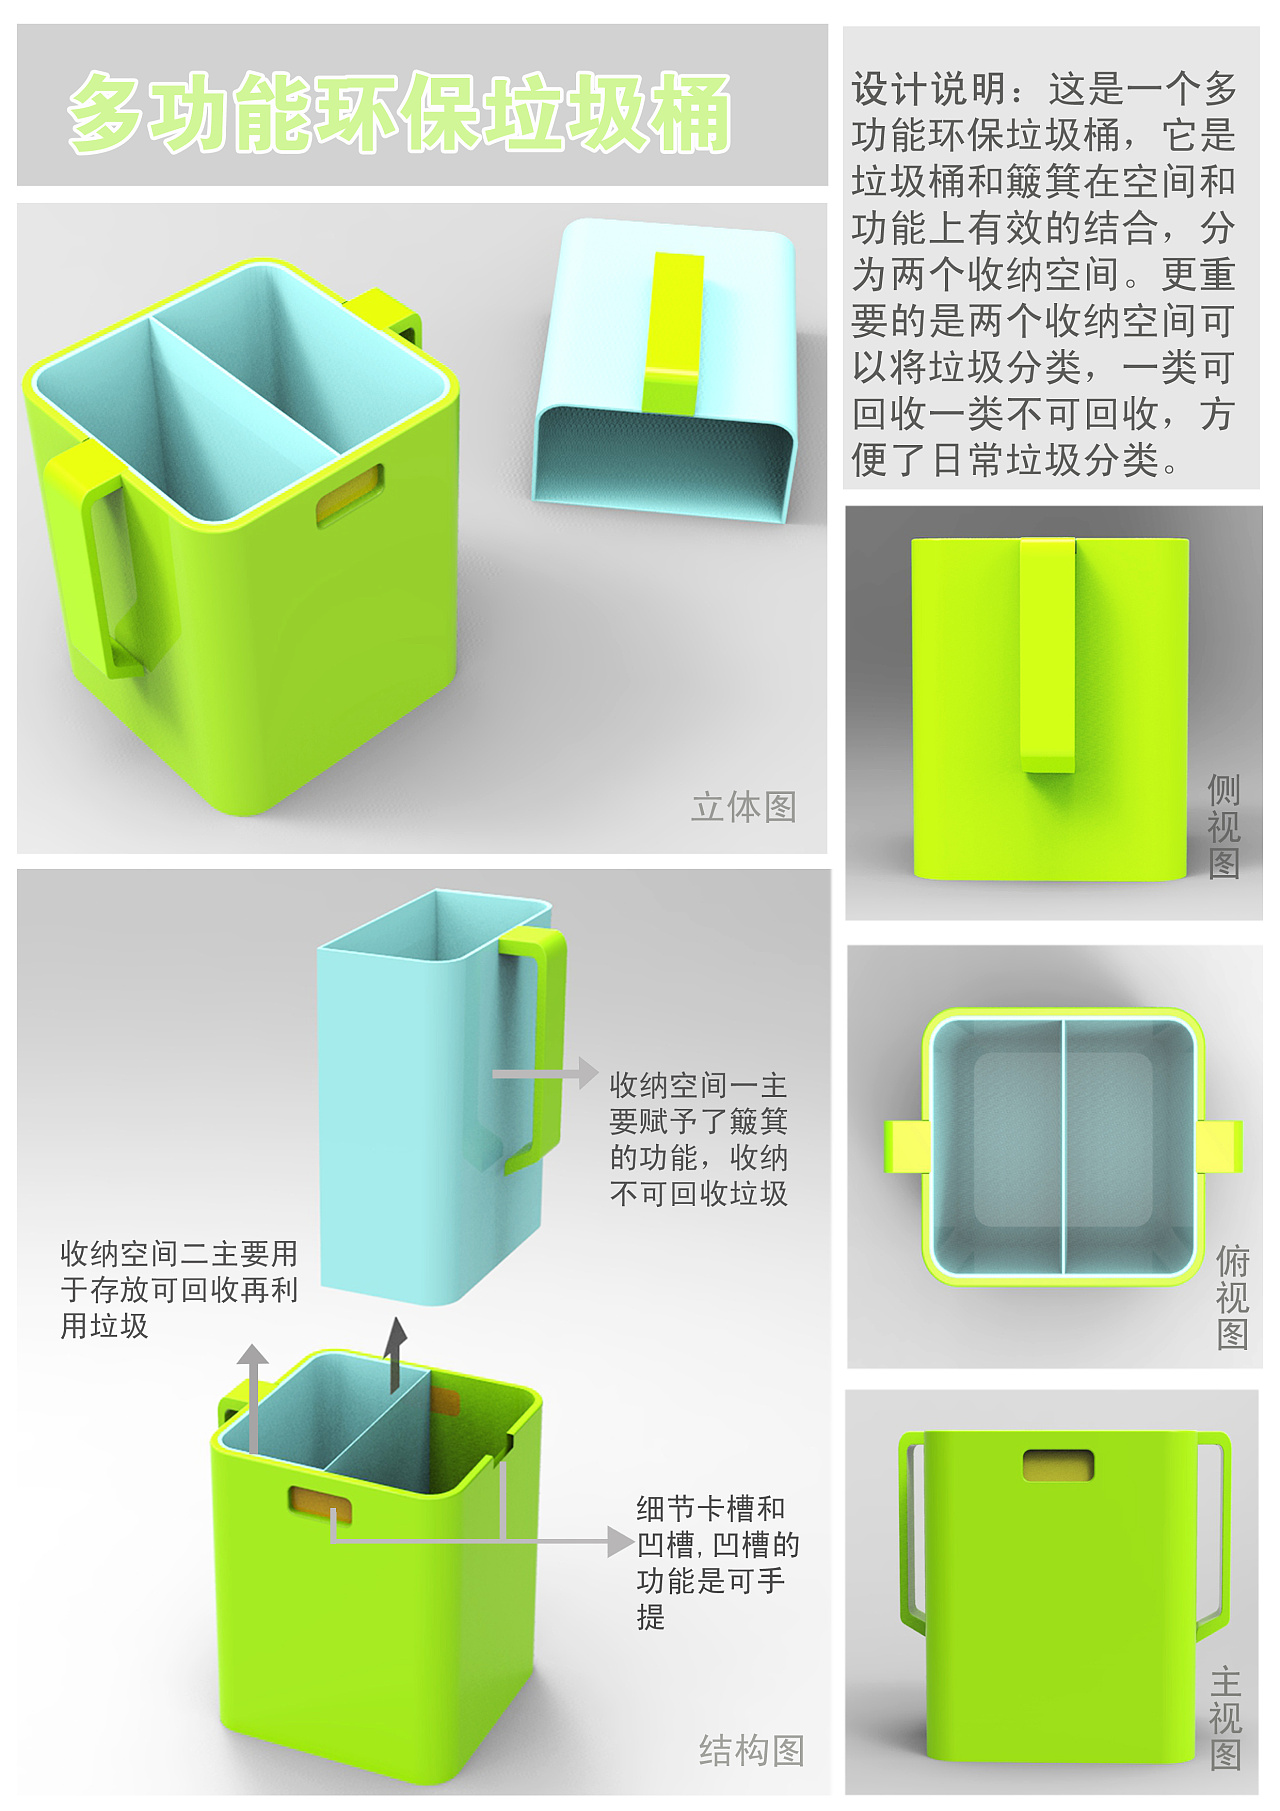 设计思路:家居日常生活中所使用的垃圾桶